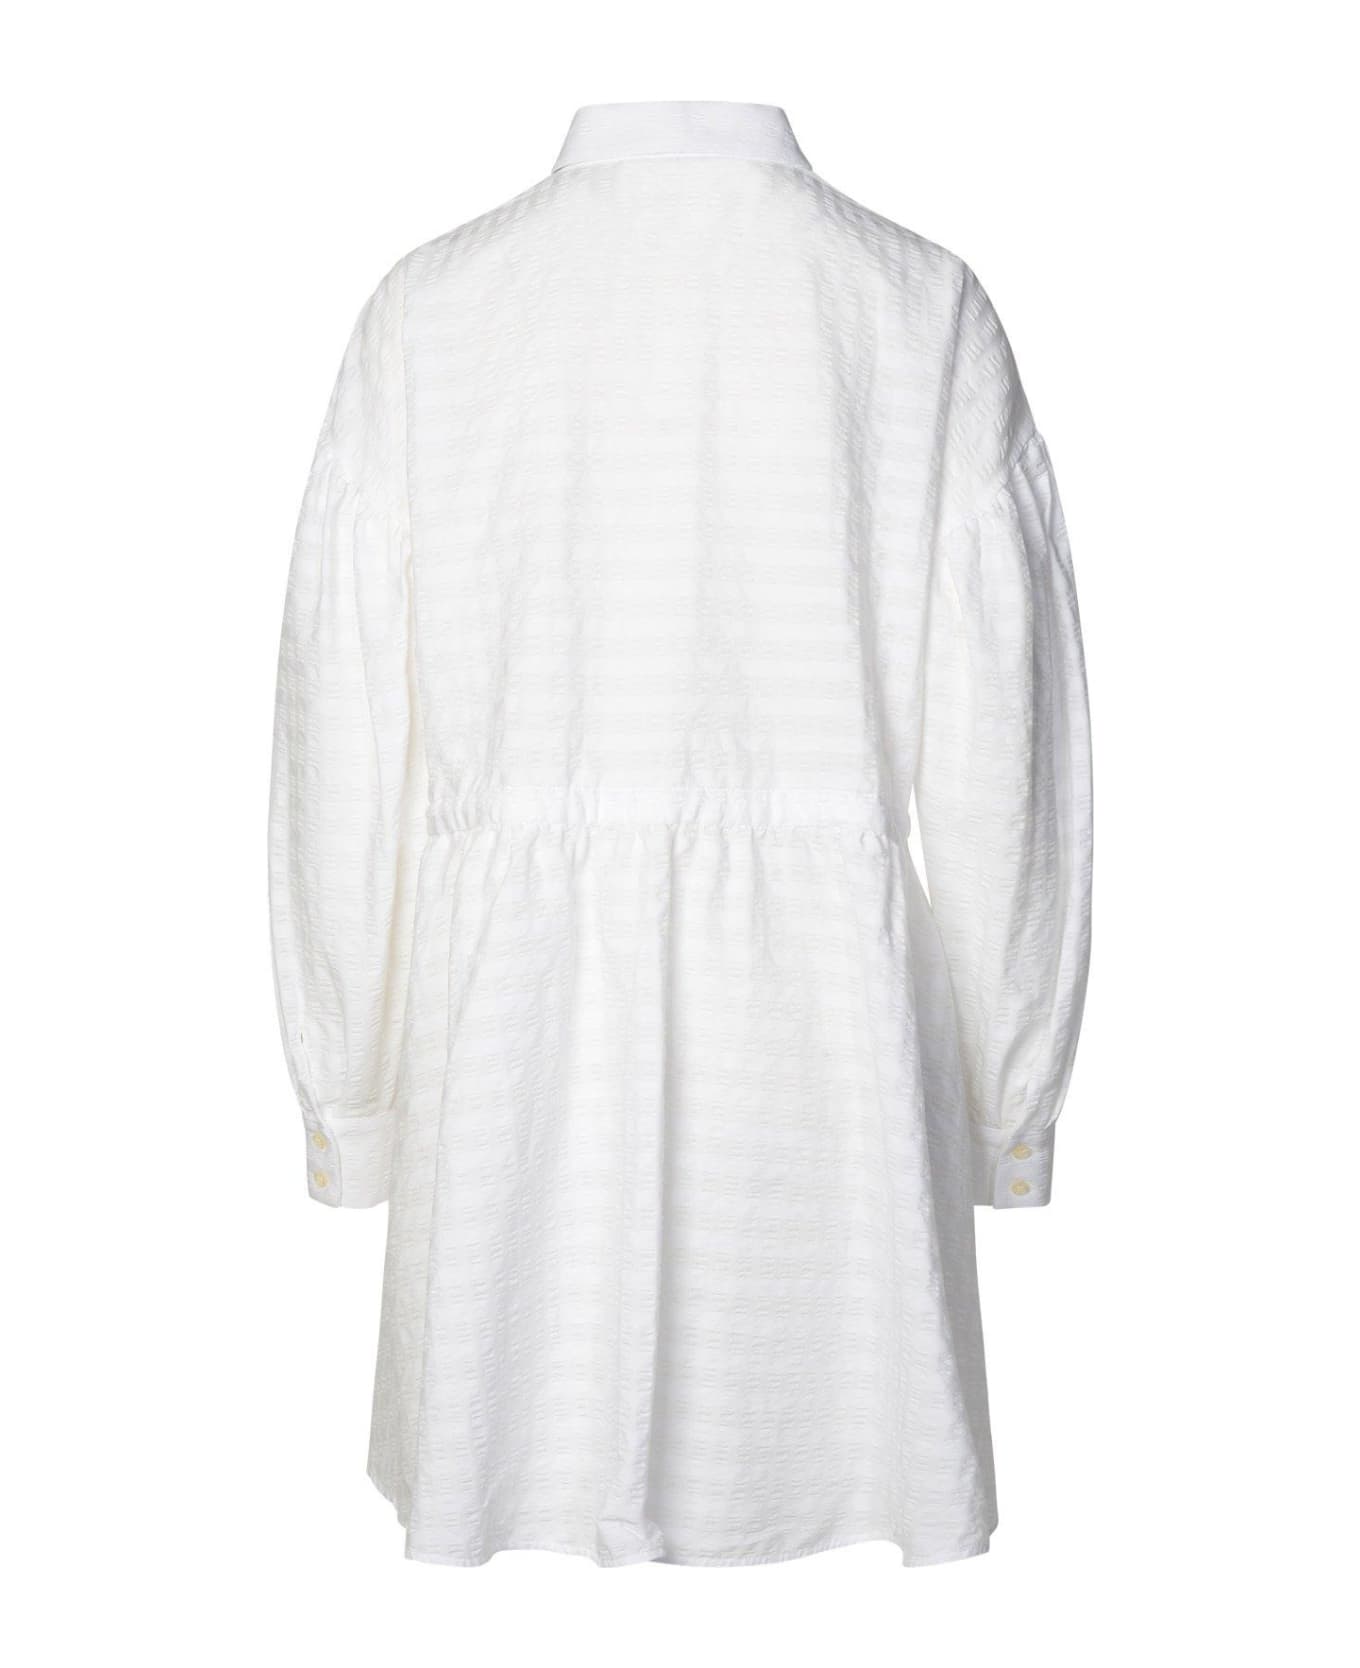 MSGM Short Dress With Adjustable Waist In White Cotton Seersucker - White